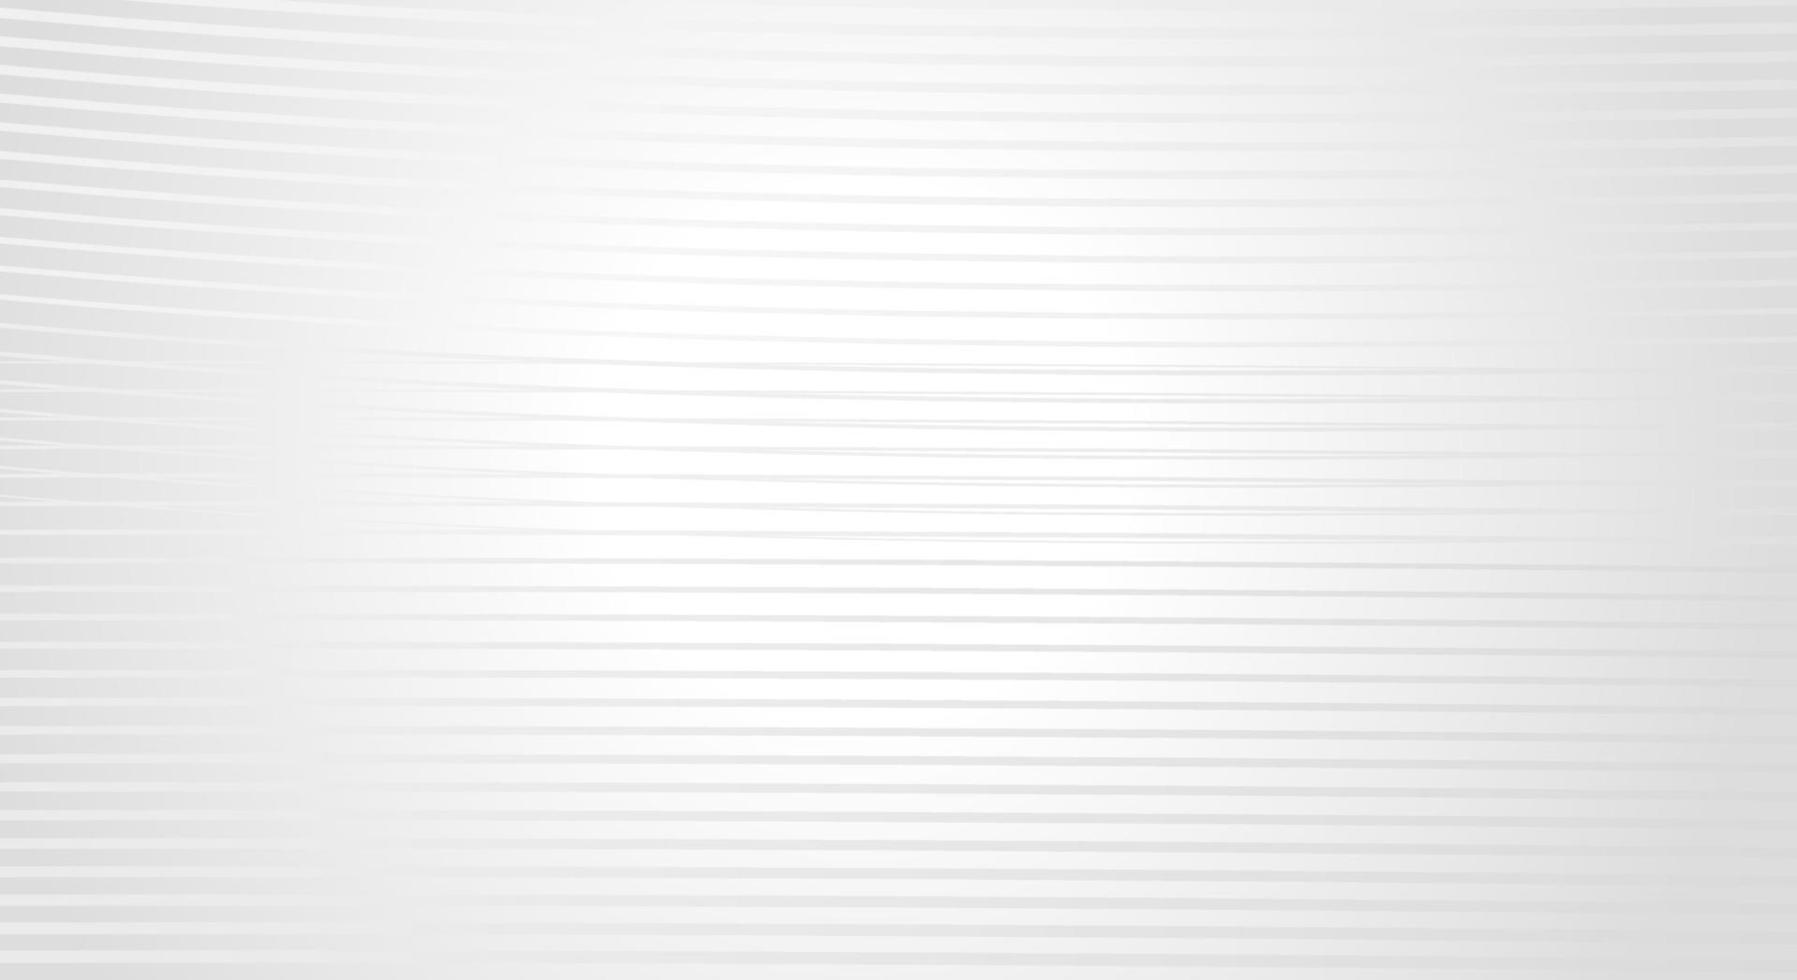 fondo rayado diagonal deformado abstracto curvo torcido inclinado, patrón de líneas onduladas con espacio de copia para texto o mensaje vector